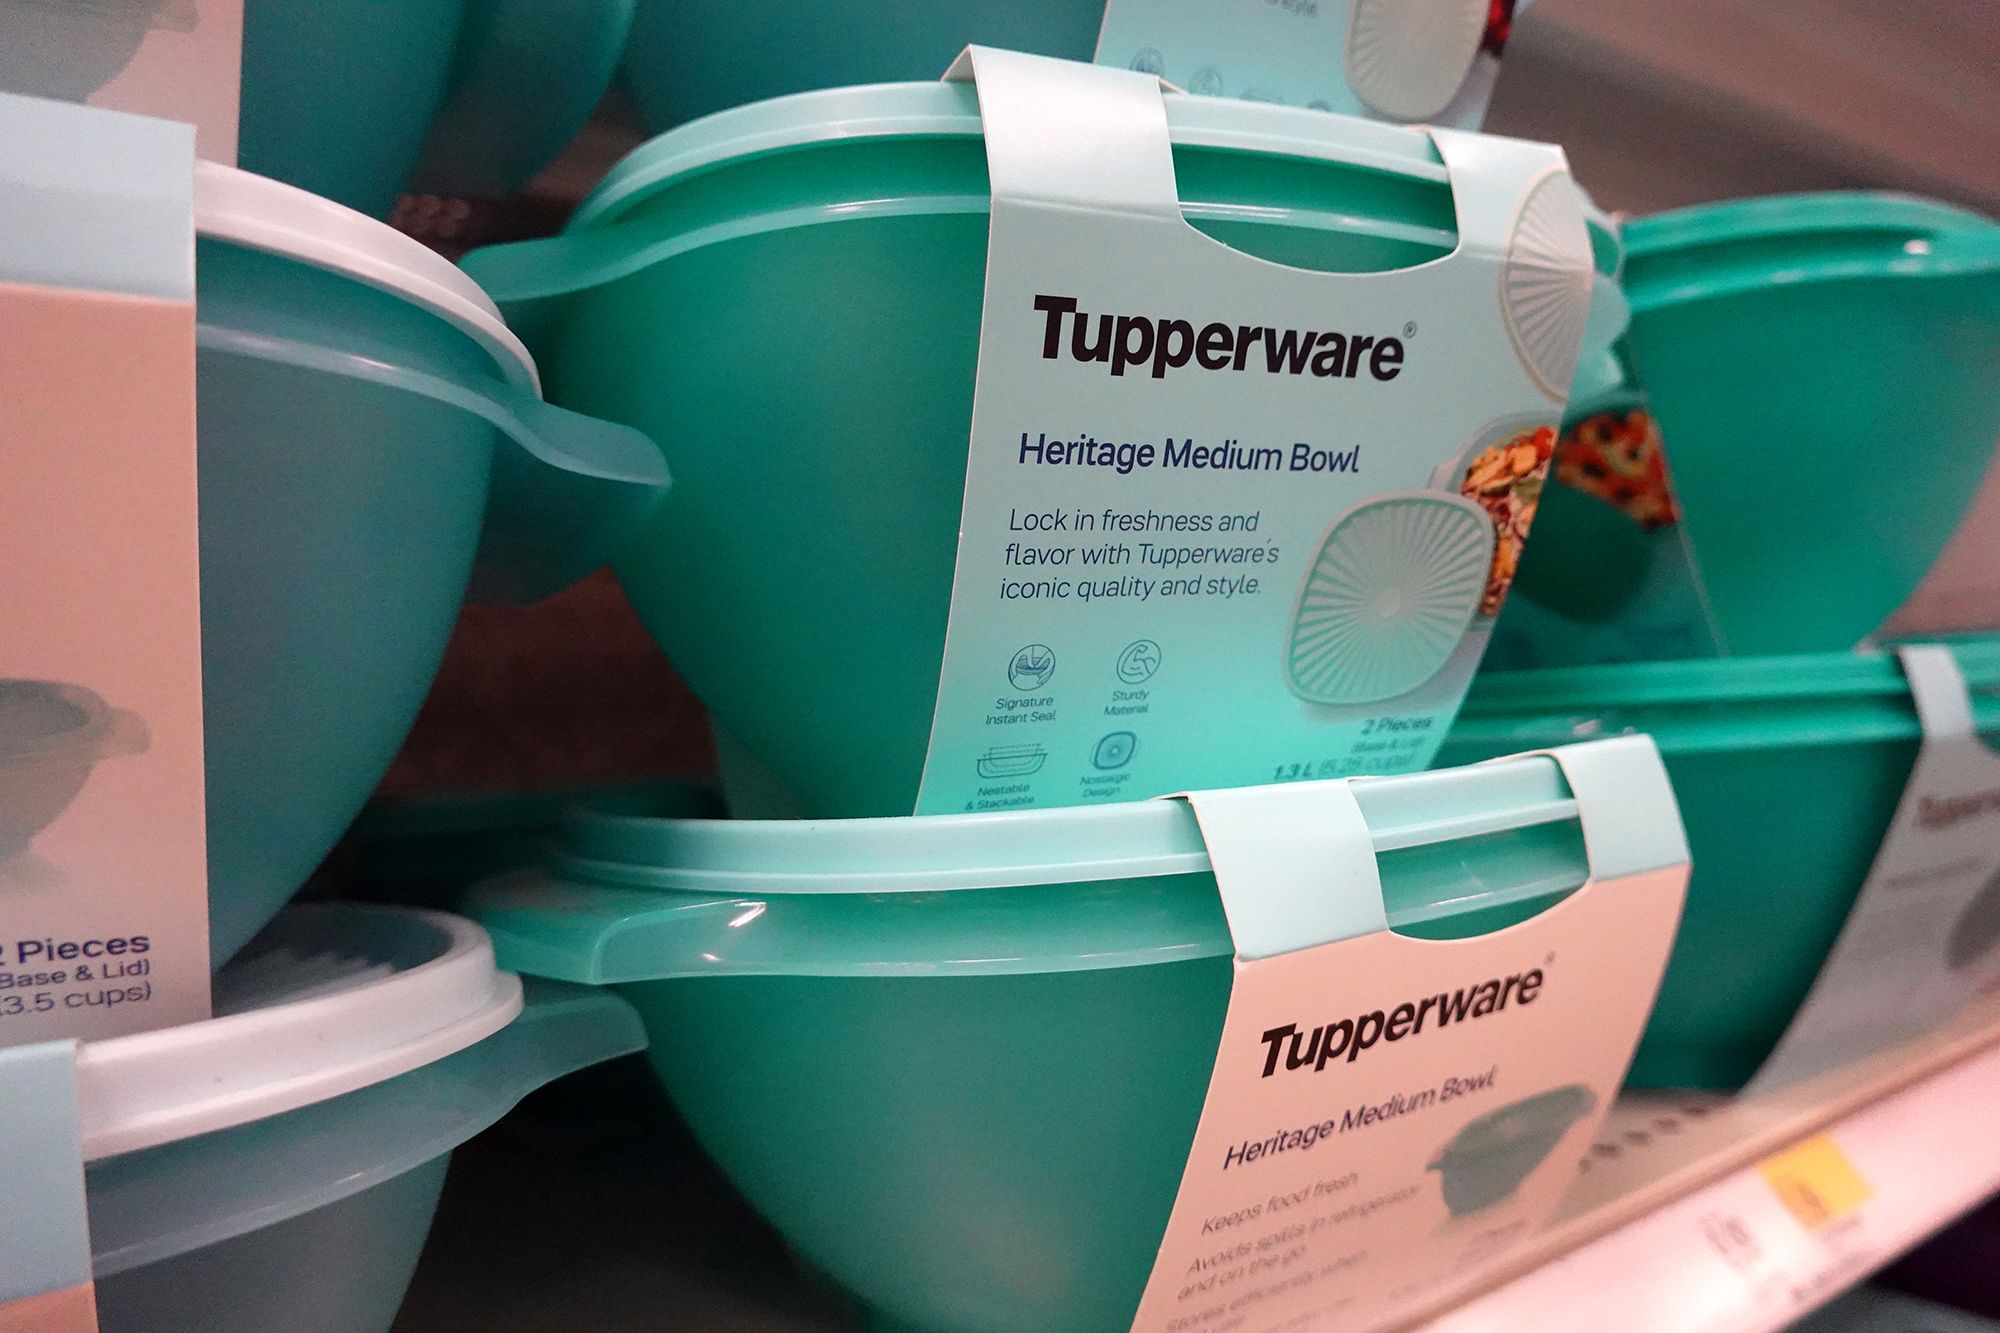 Tupperware Kit Instantâneas Disney 6 Pecas - Loja Chefe Tupperware